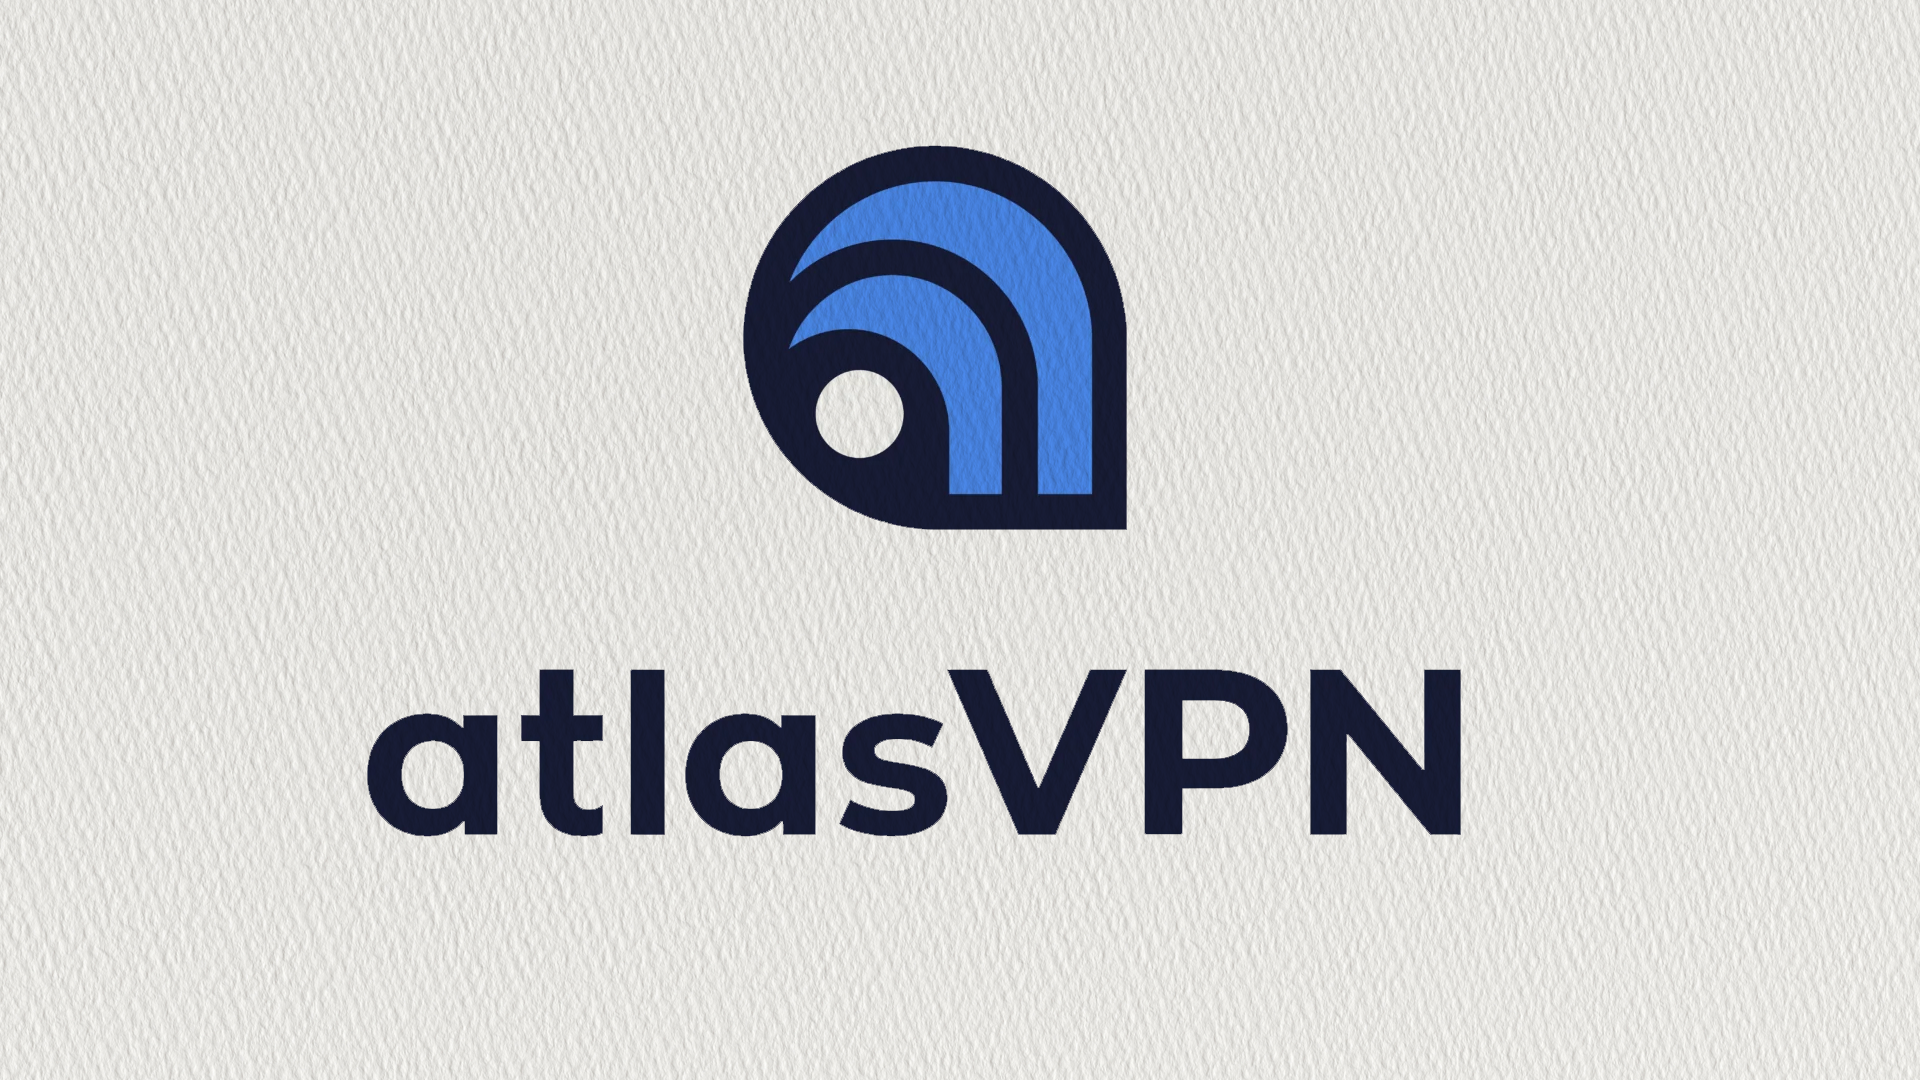  Atlas VPN – snabb, billig och bra 